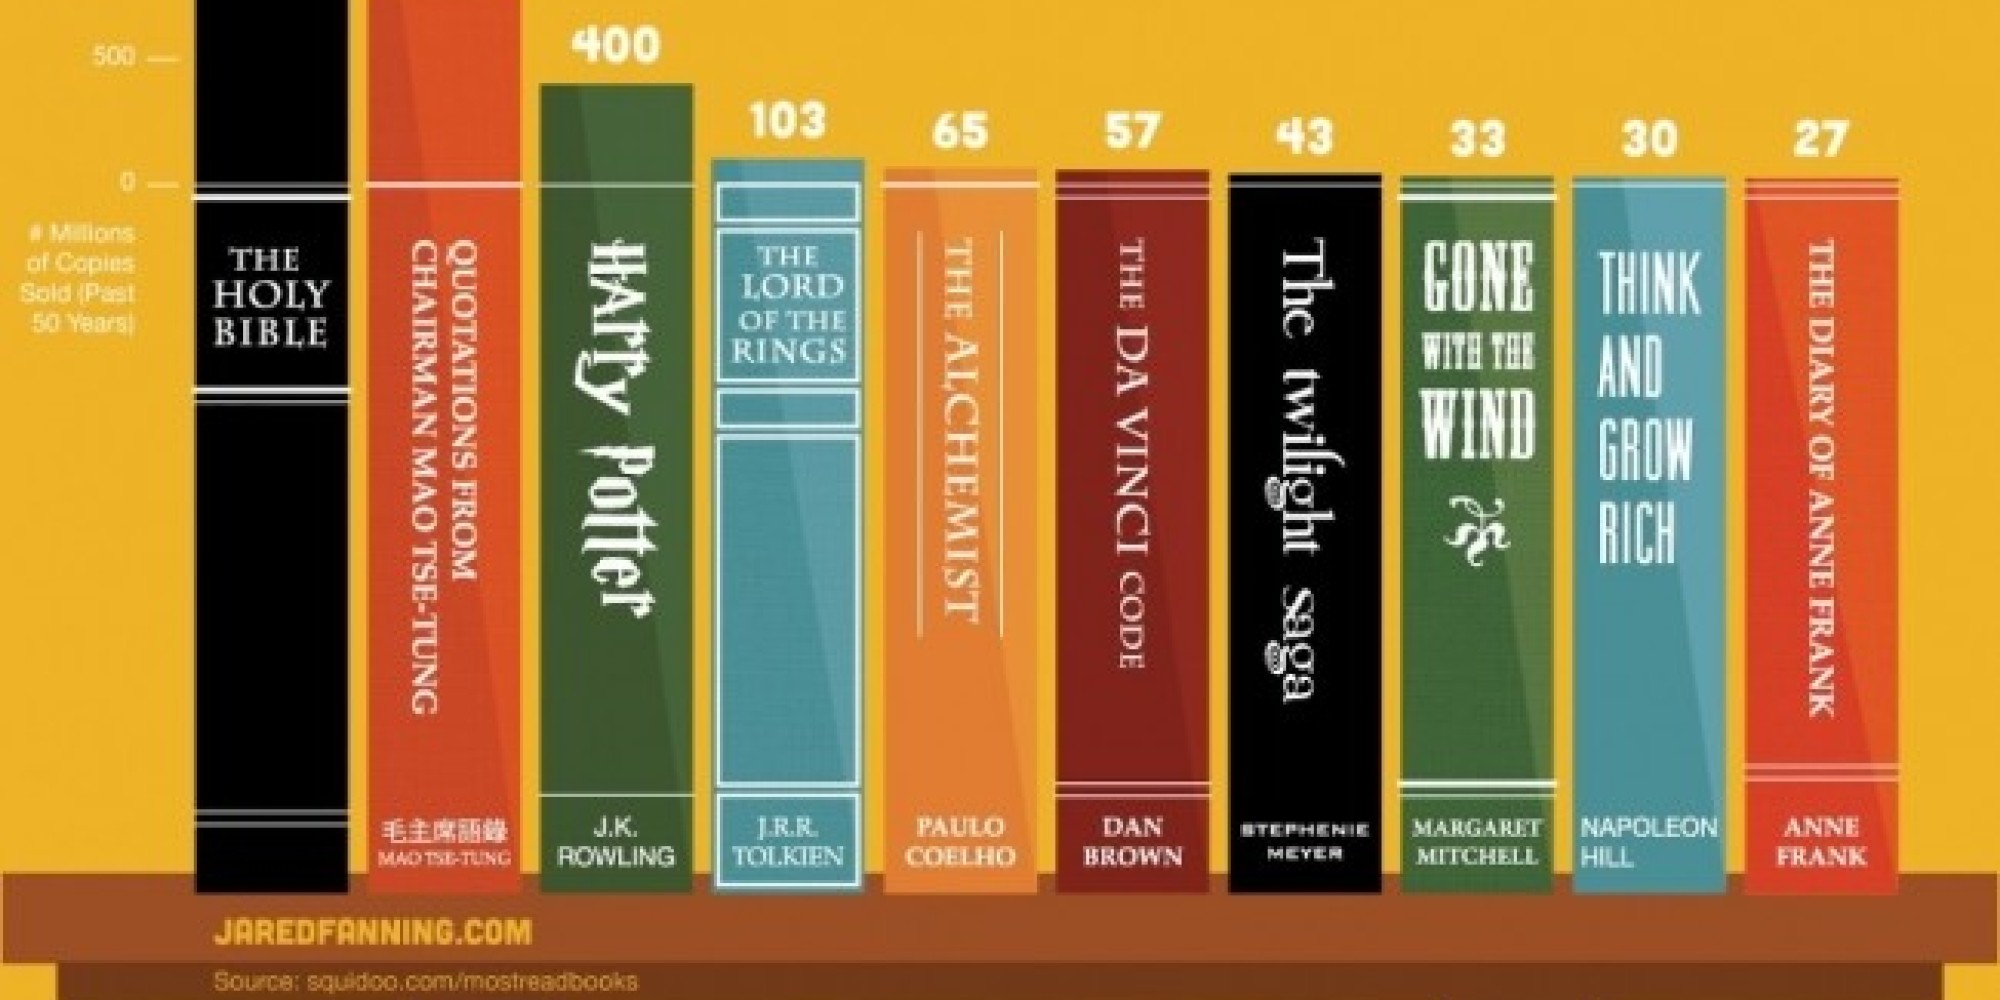 Quali sono i libri più letti del mondo? In testa la Bibbia, il Libretto rosso di Mao Tsetung e